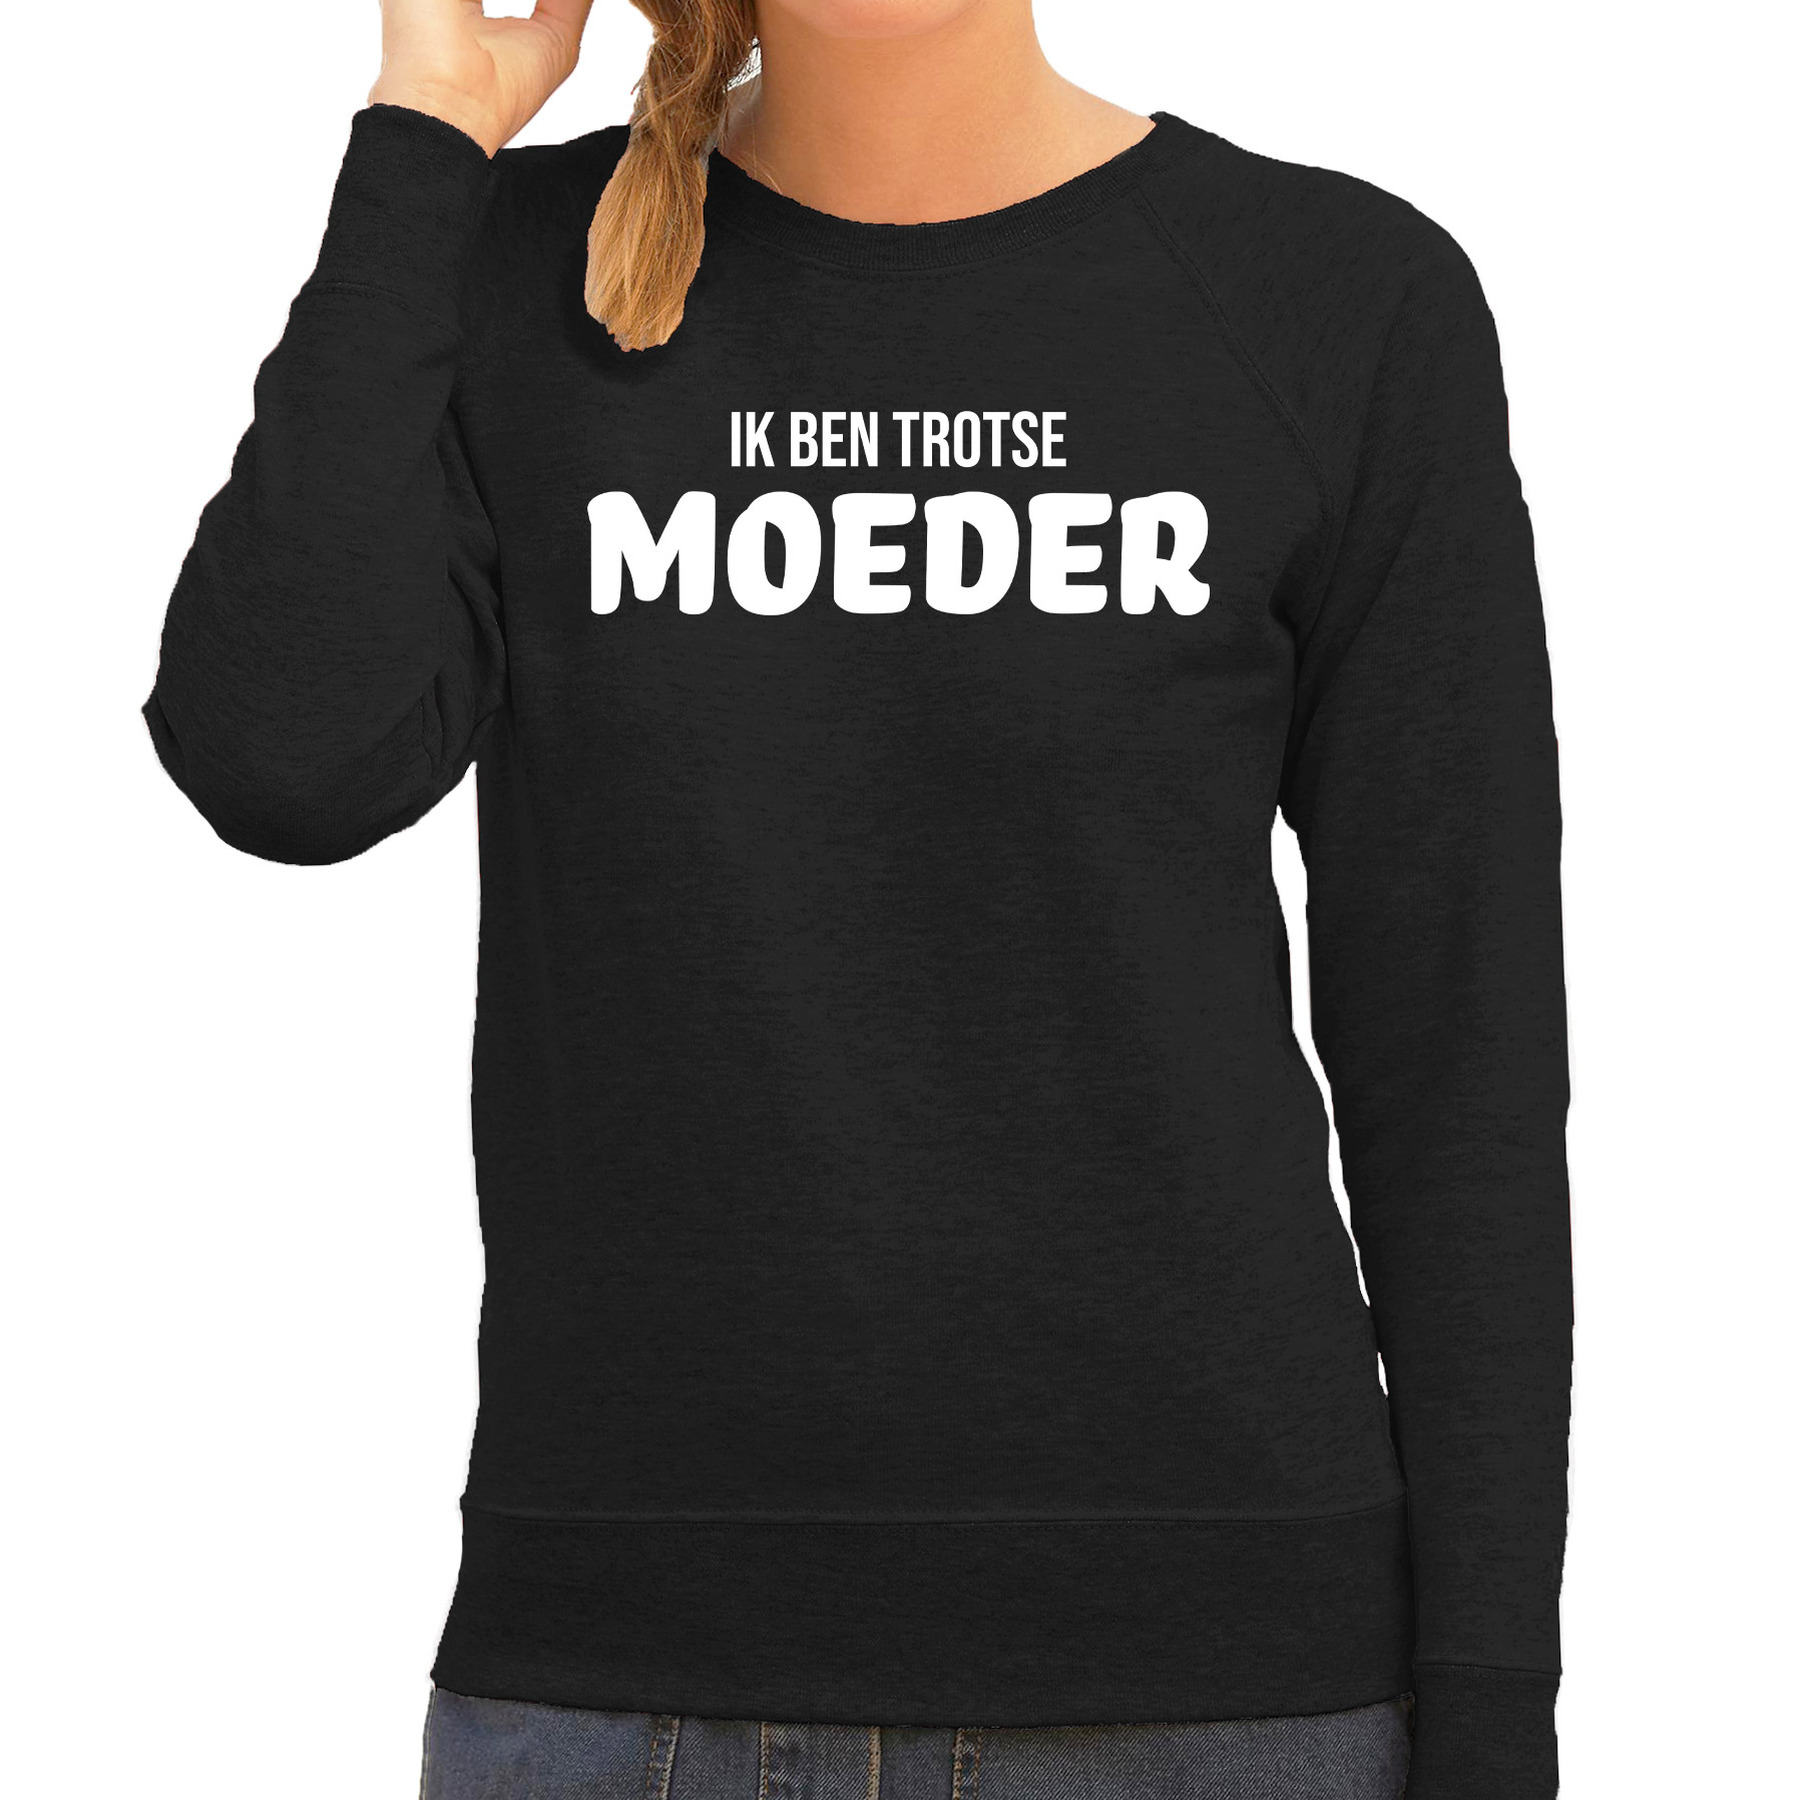 Ik ben trotse moeder sweater / trui zwart voor dames - moederdag cadeau truien mama